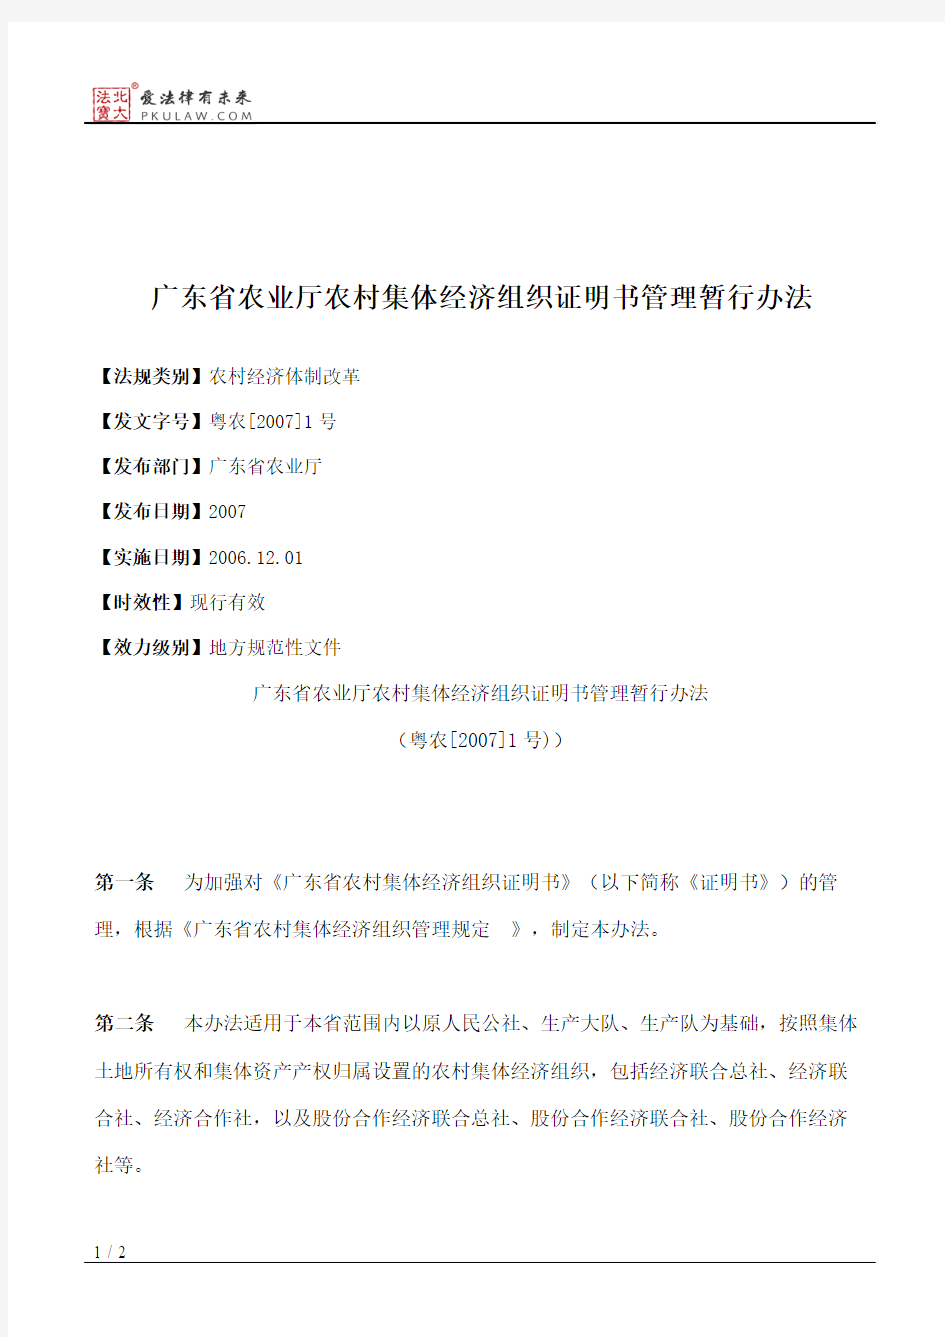 广东省农业厅农村集体经济组织证明书管理暂行办法